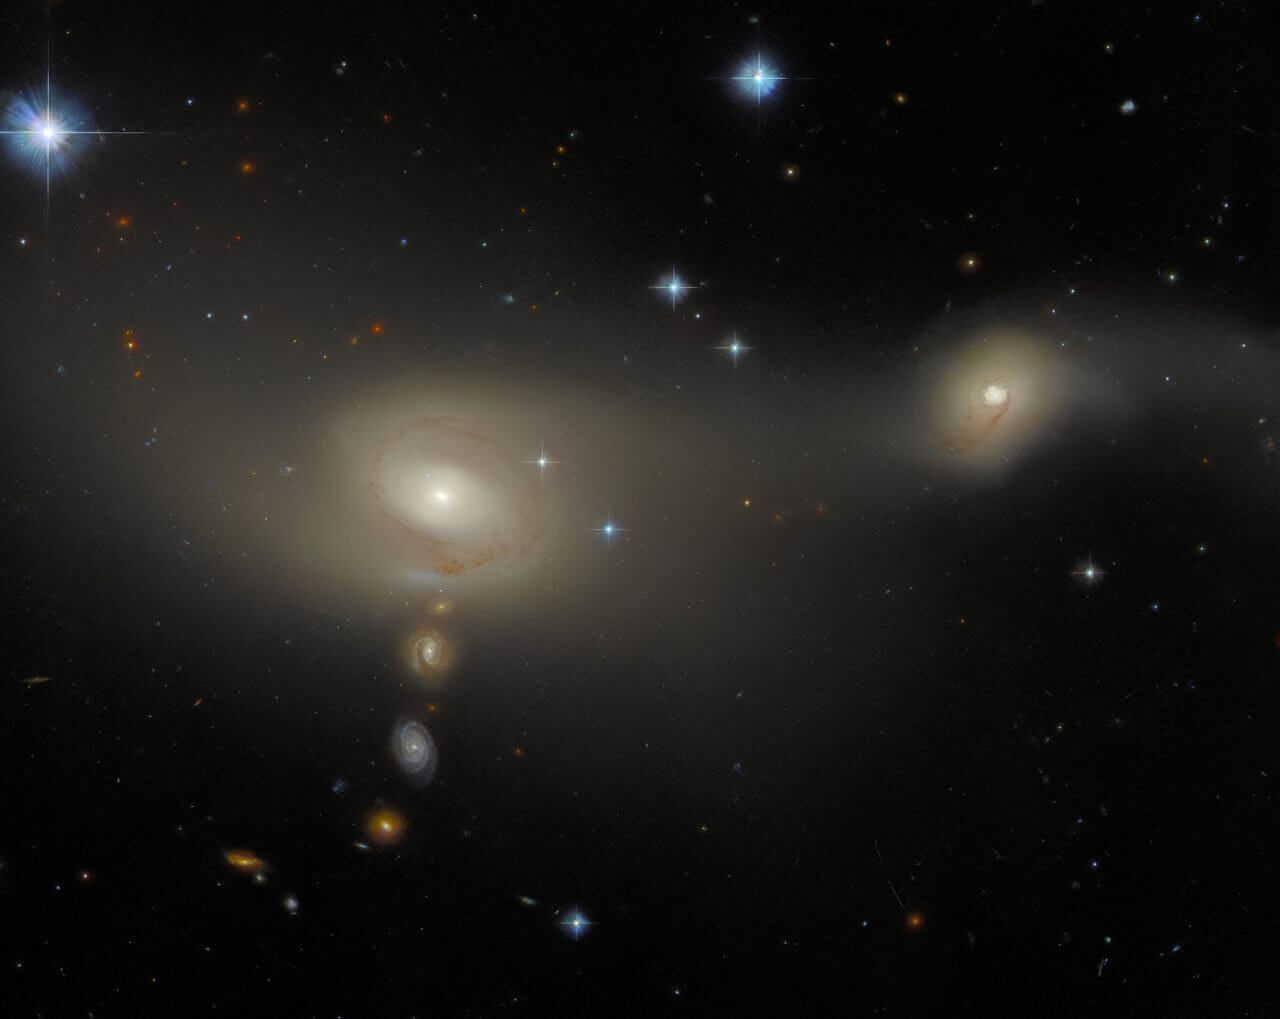 【▲ 相互作用銀河「Arp-Madore 2105-332（AM 2105-332）」。銀河の名前は左が「ESO 402-10」、右が「ESO 402-9」（Credit: ESA/Hubble & NASA, J. Dalcanton; Acknowledgement: L. Shatz）】